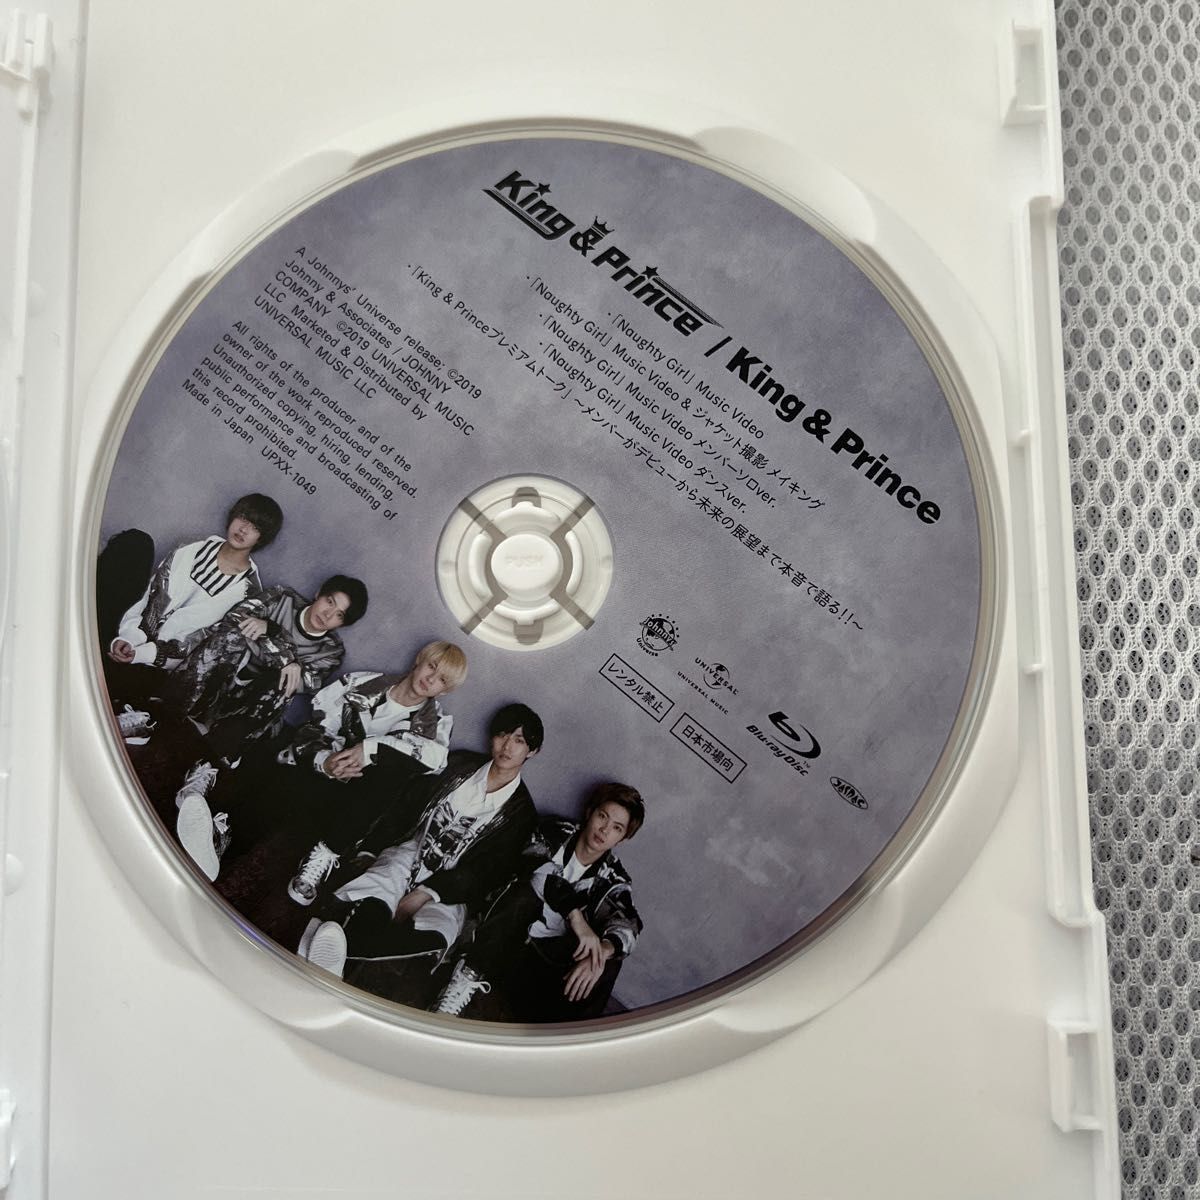 初回限定盤A (Blu-ray付) King & Prince CD+Blu-ray/King & Prince 1st アルバム